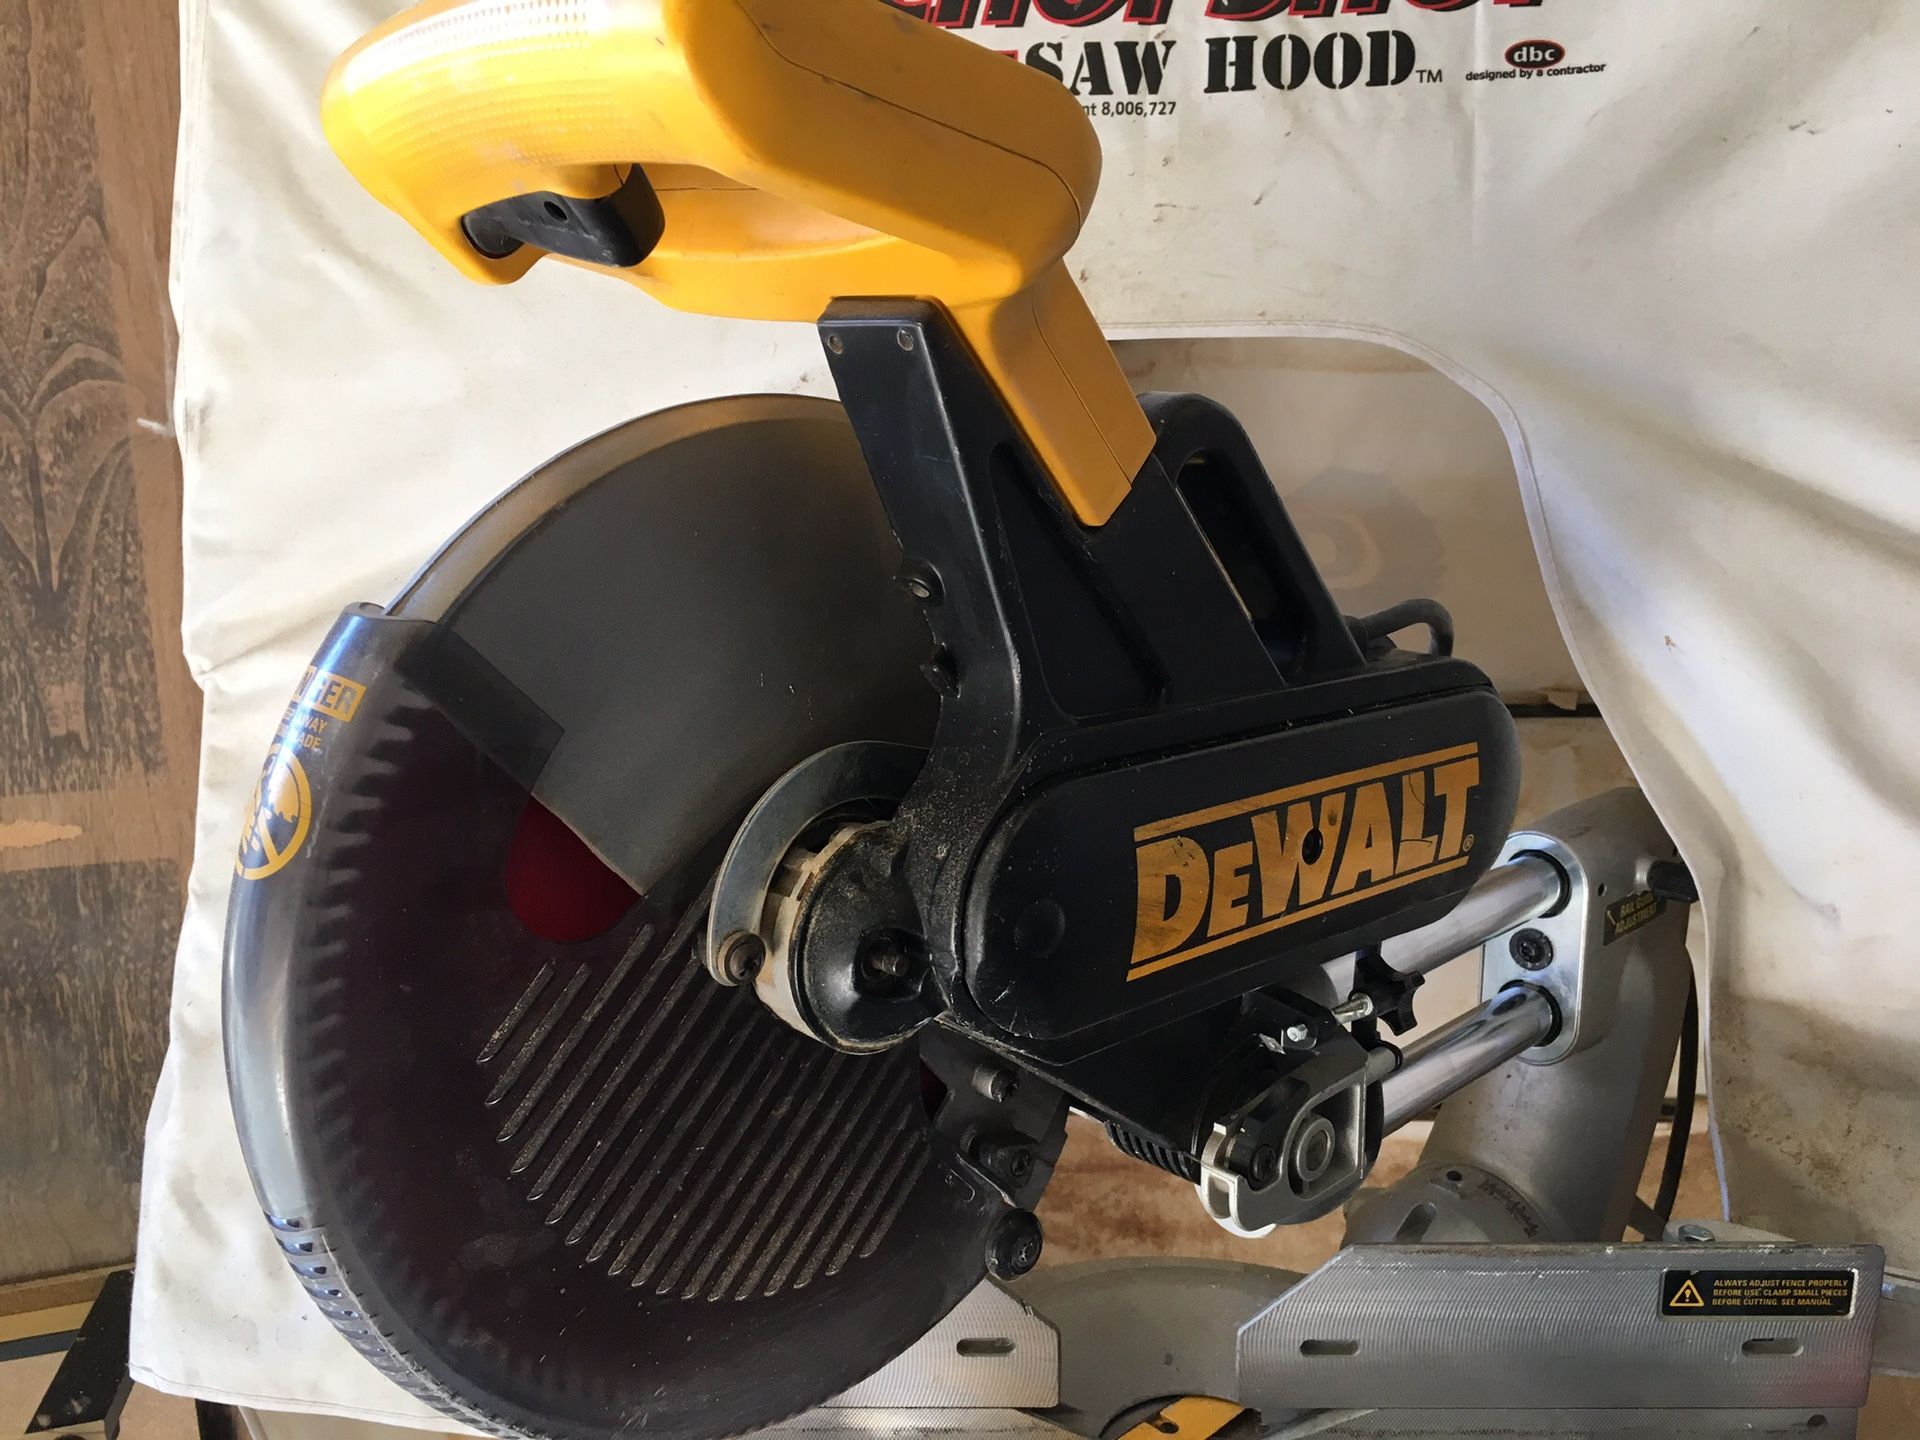 Dewalt DW 708. 12” Sliding compound miter saw.